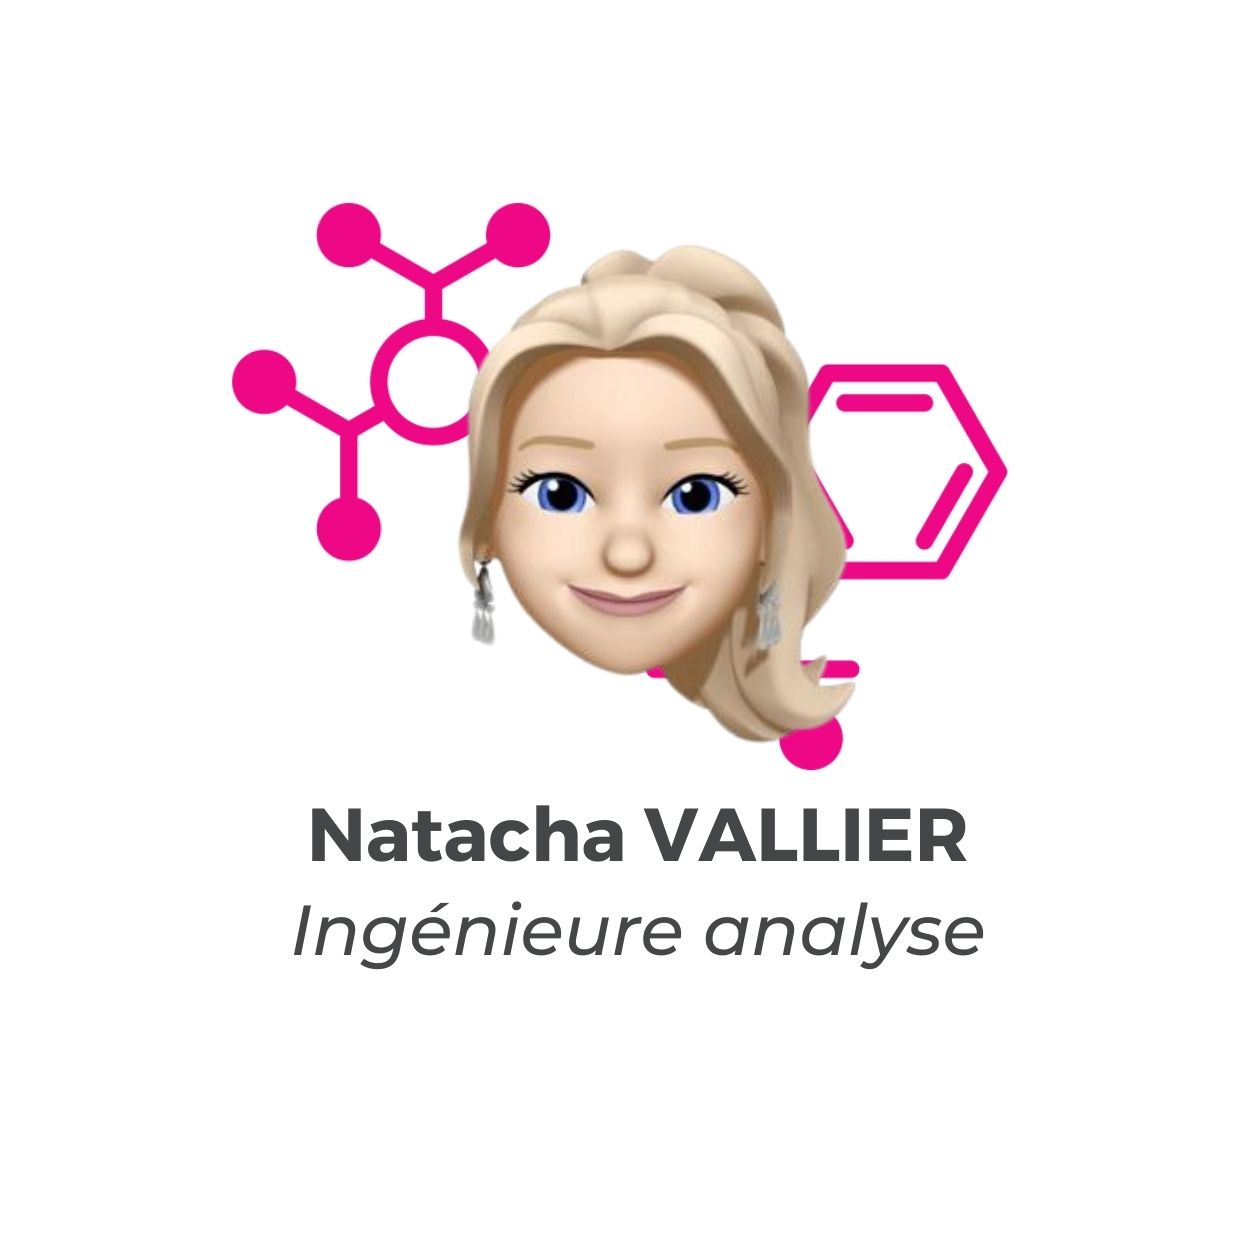 Natacha VALLIER